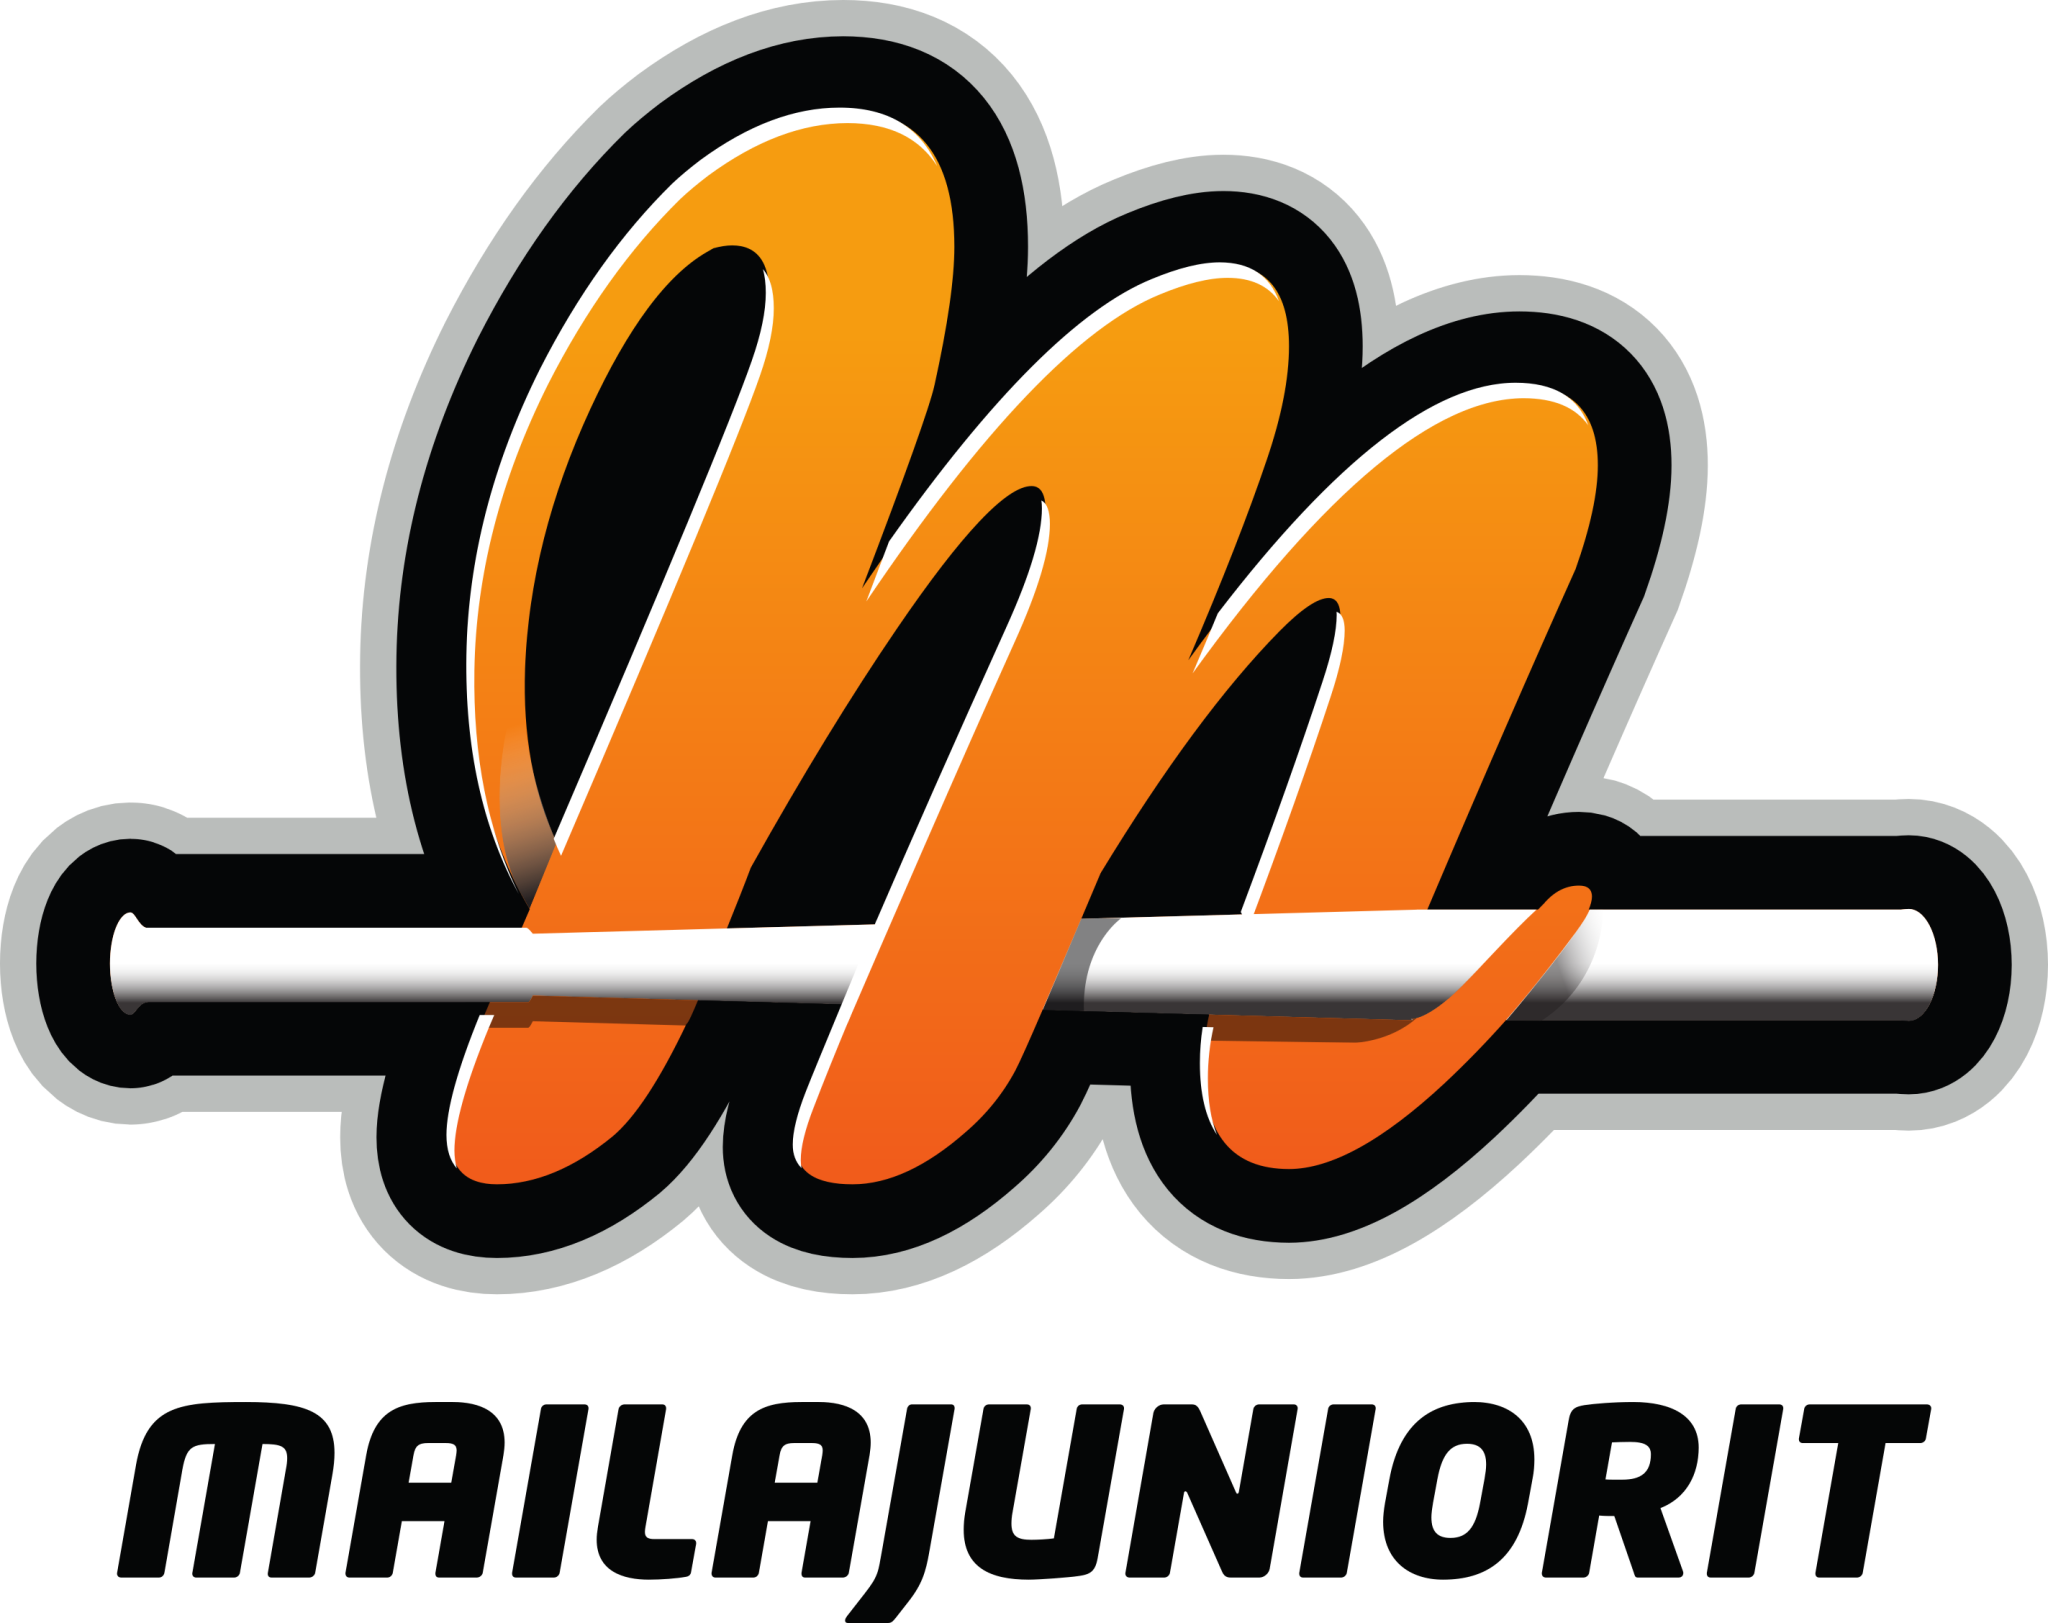 Mailajuniorit-logo.